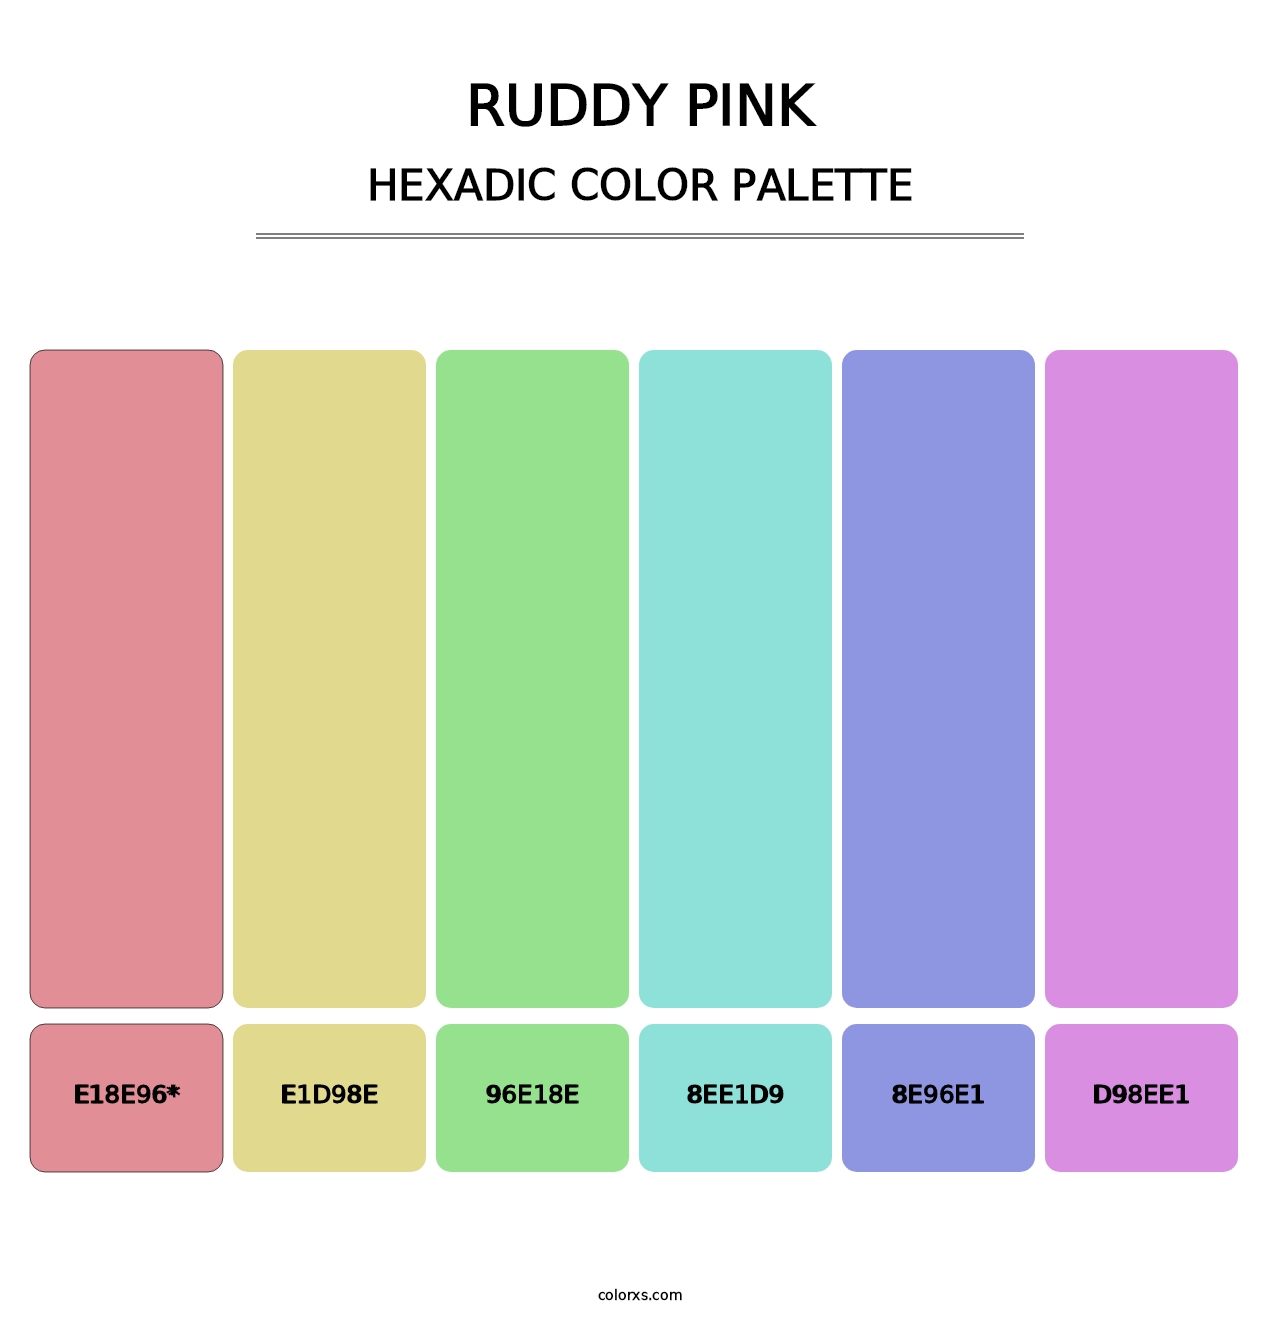 Ruddy Pink - Hexadic Color Palette